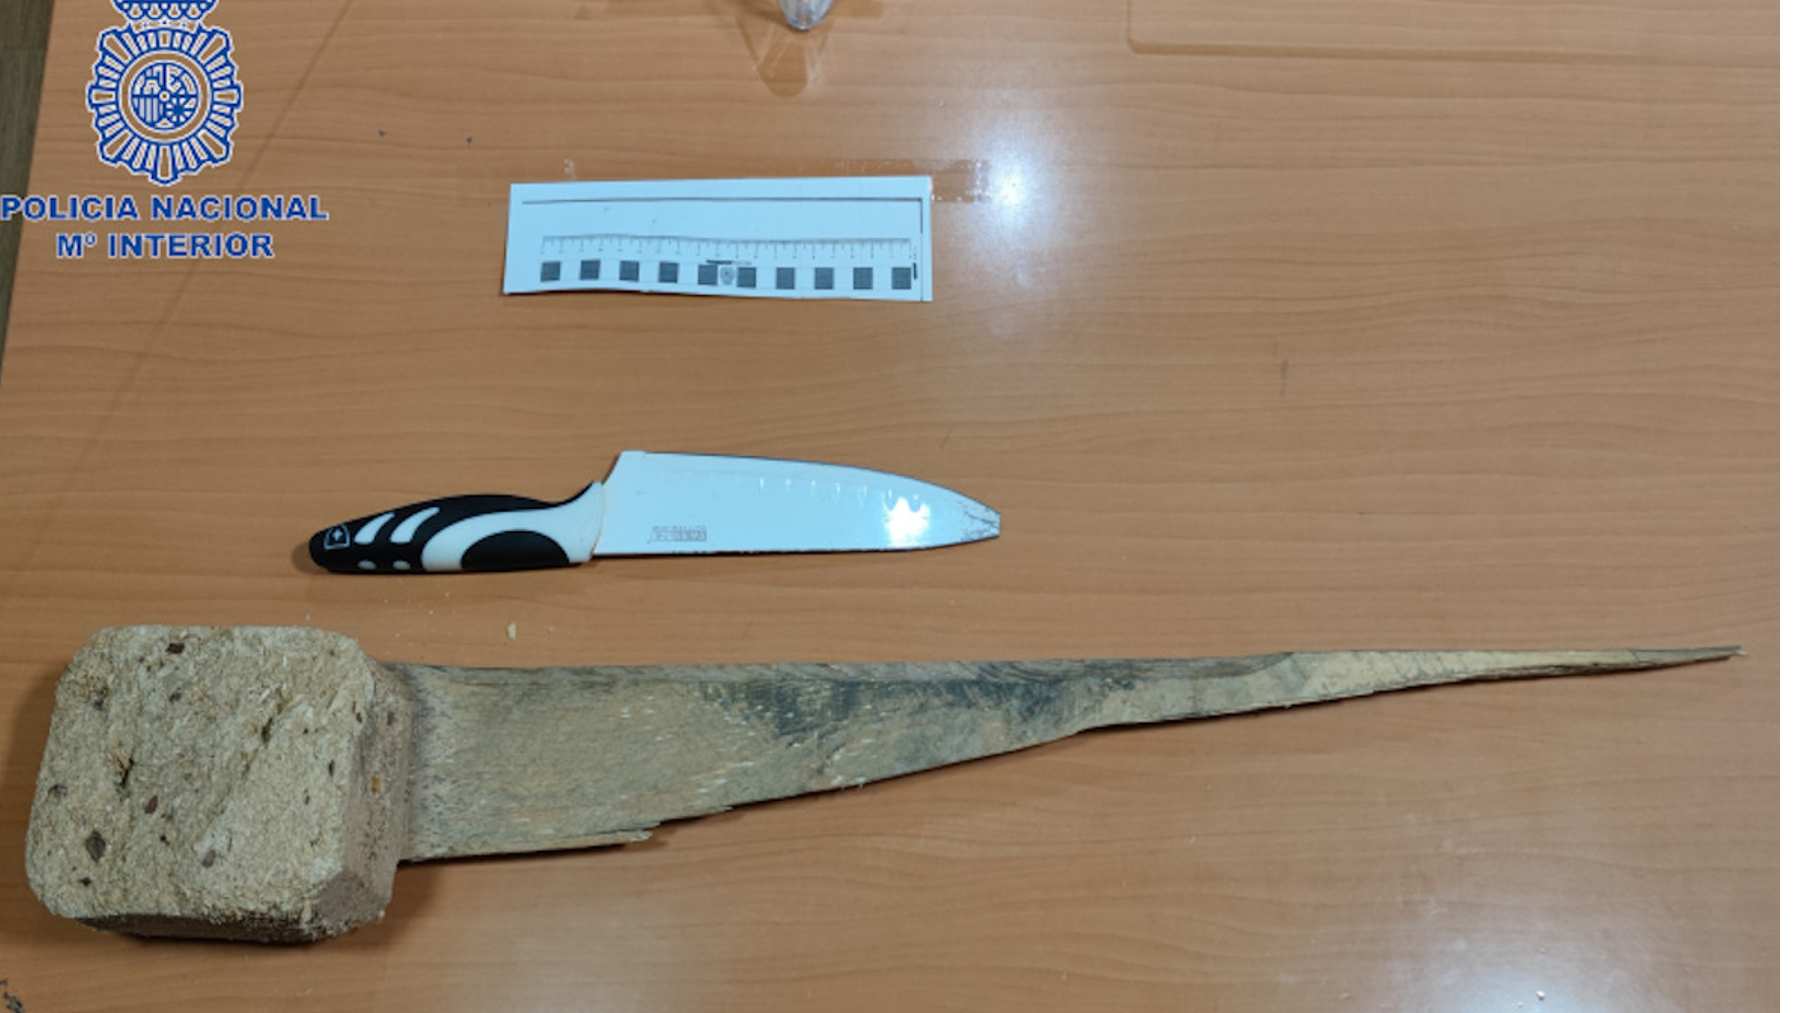 El cuchillo y el trozo de madera utilizados en el robo. POLICÍA NACIONAL